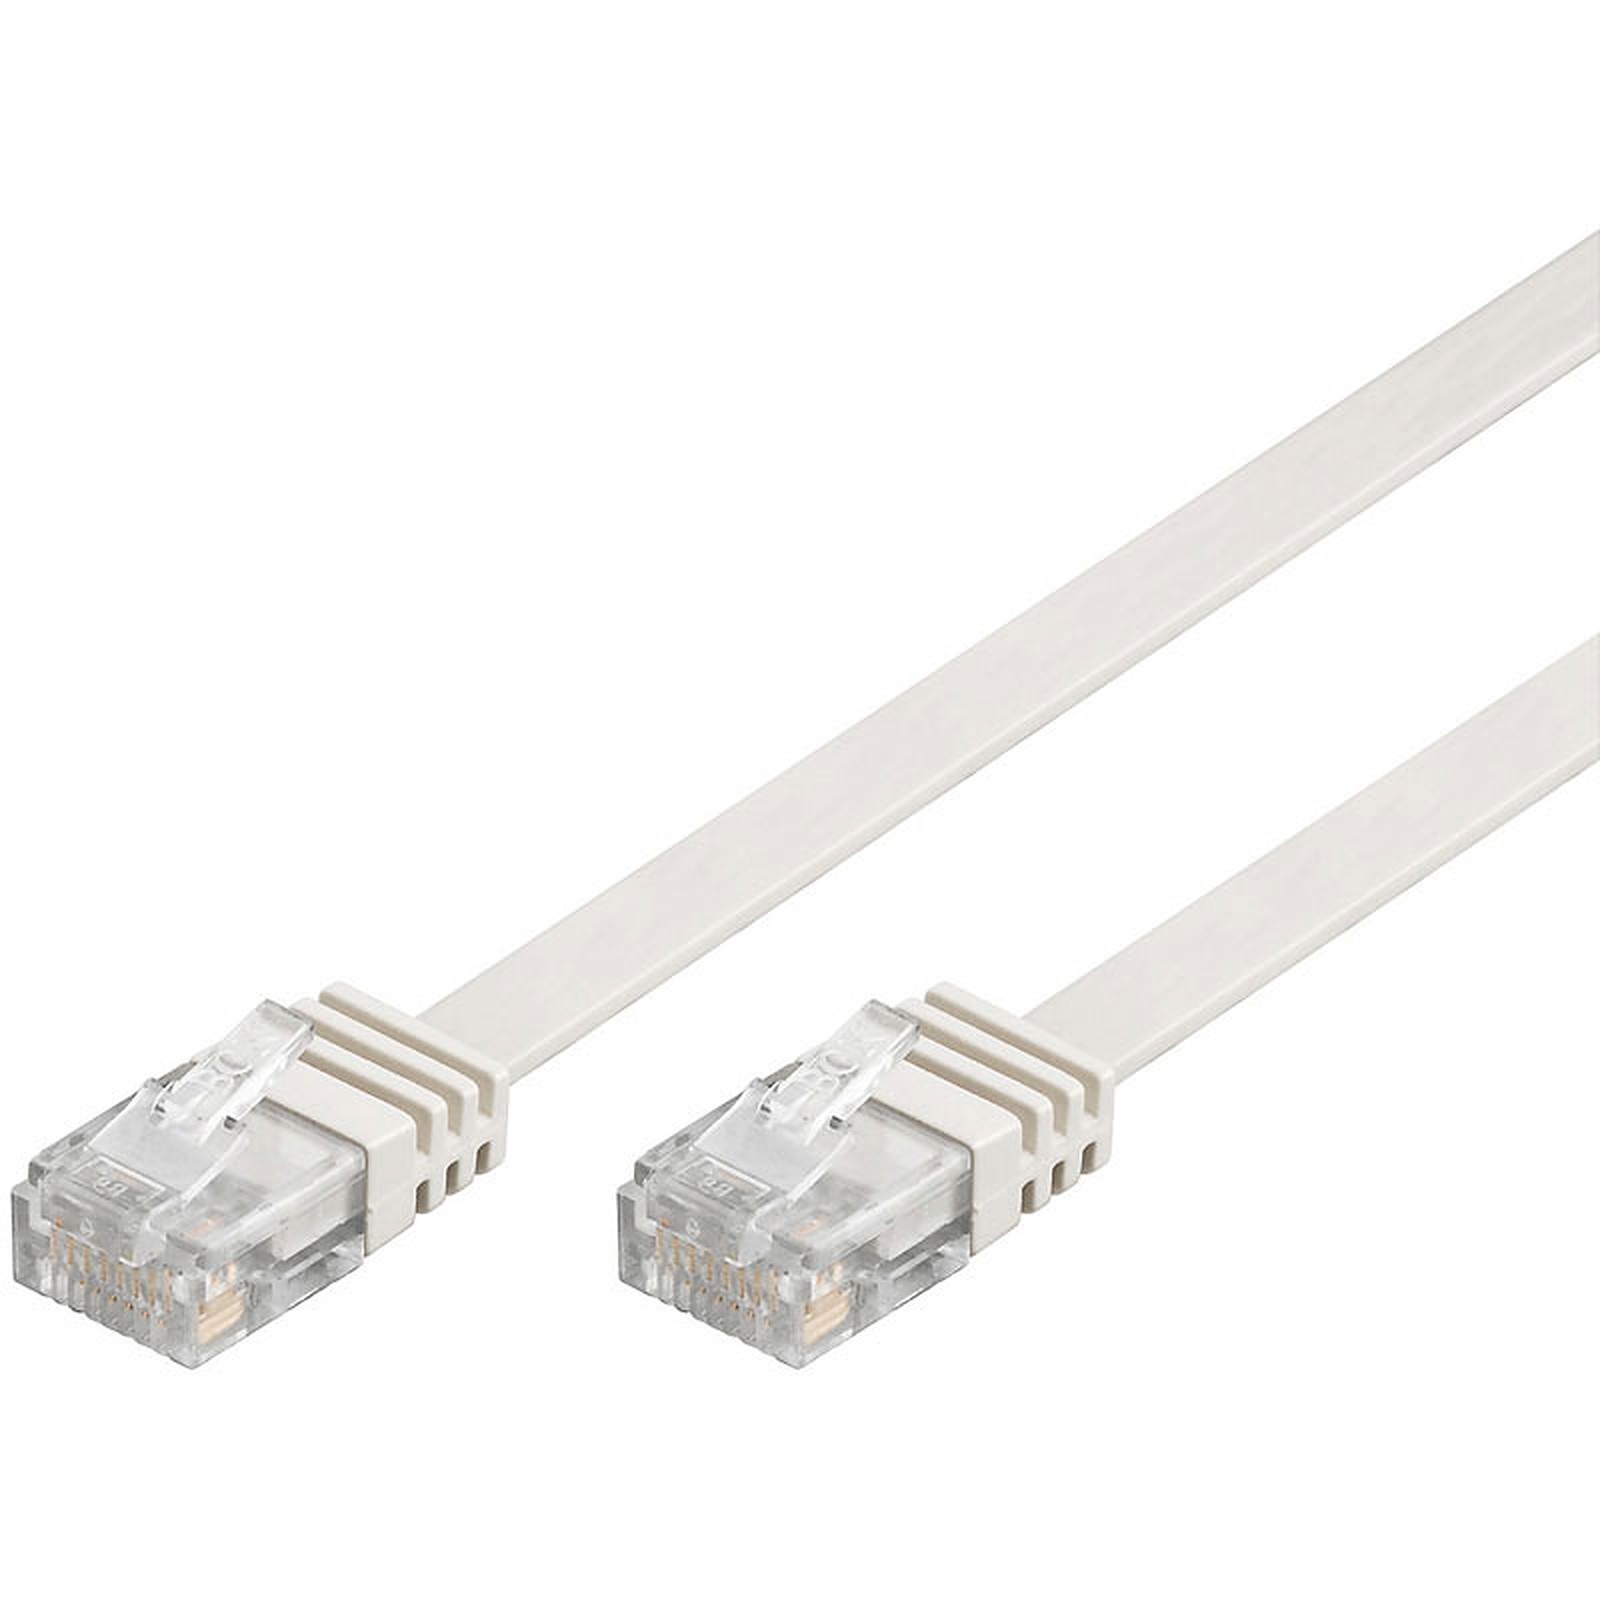 Cable RJ45 plat categorie 6 U/UTP 10 m (Blanc) - Cable RJ45 Generique